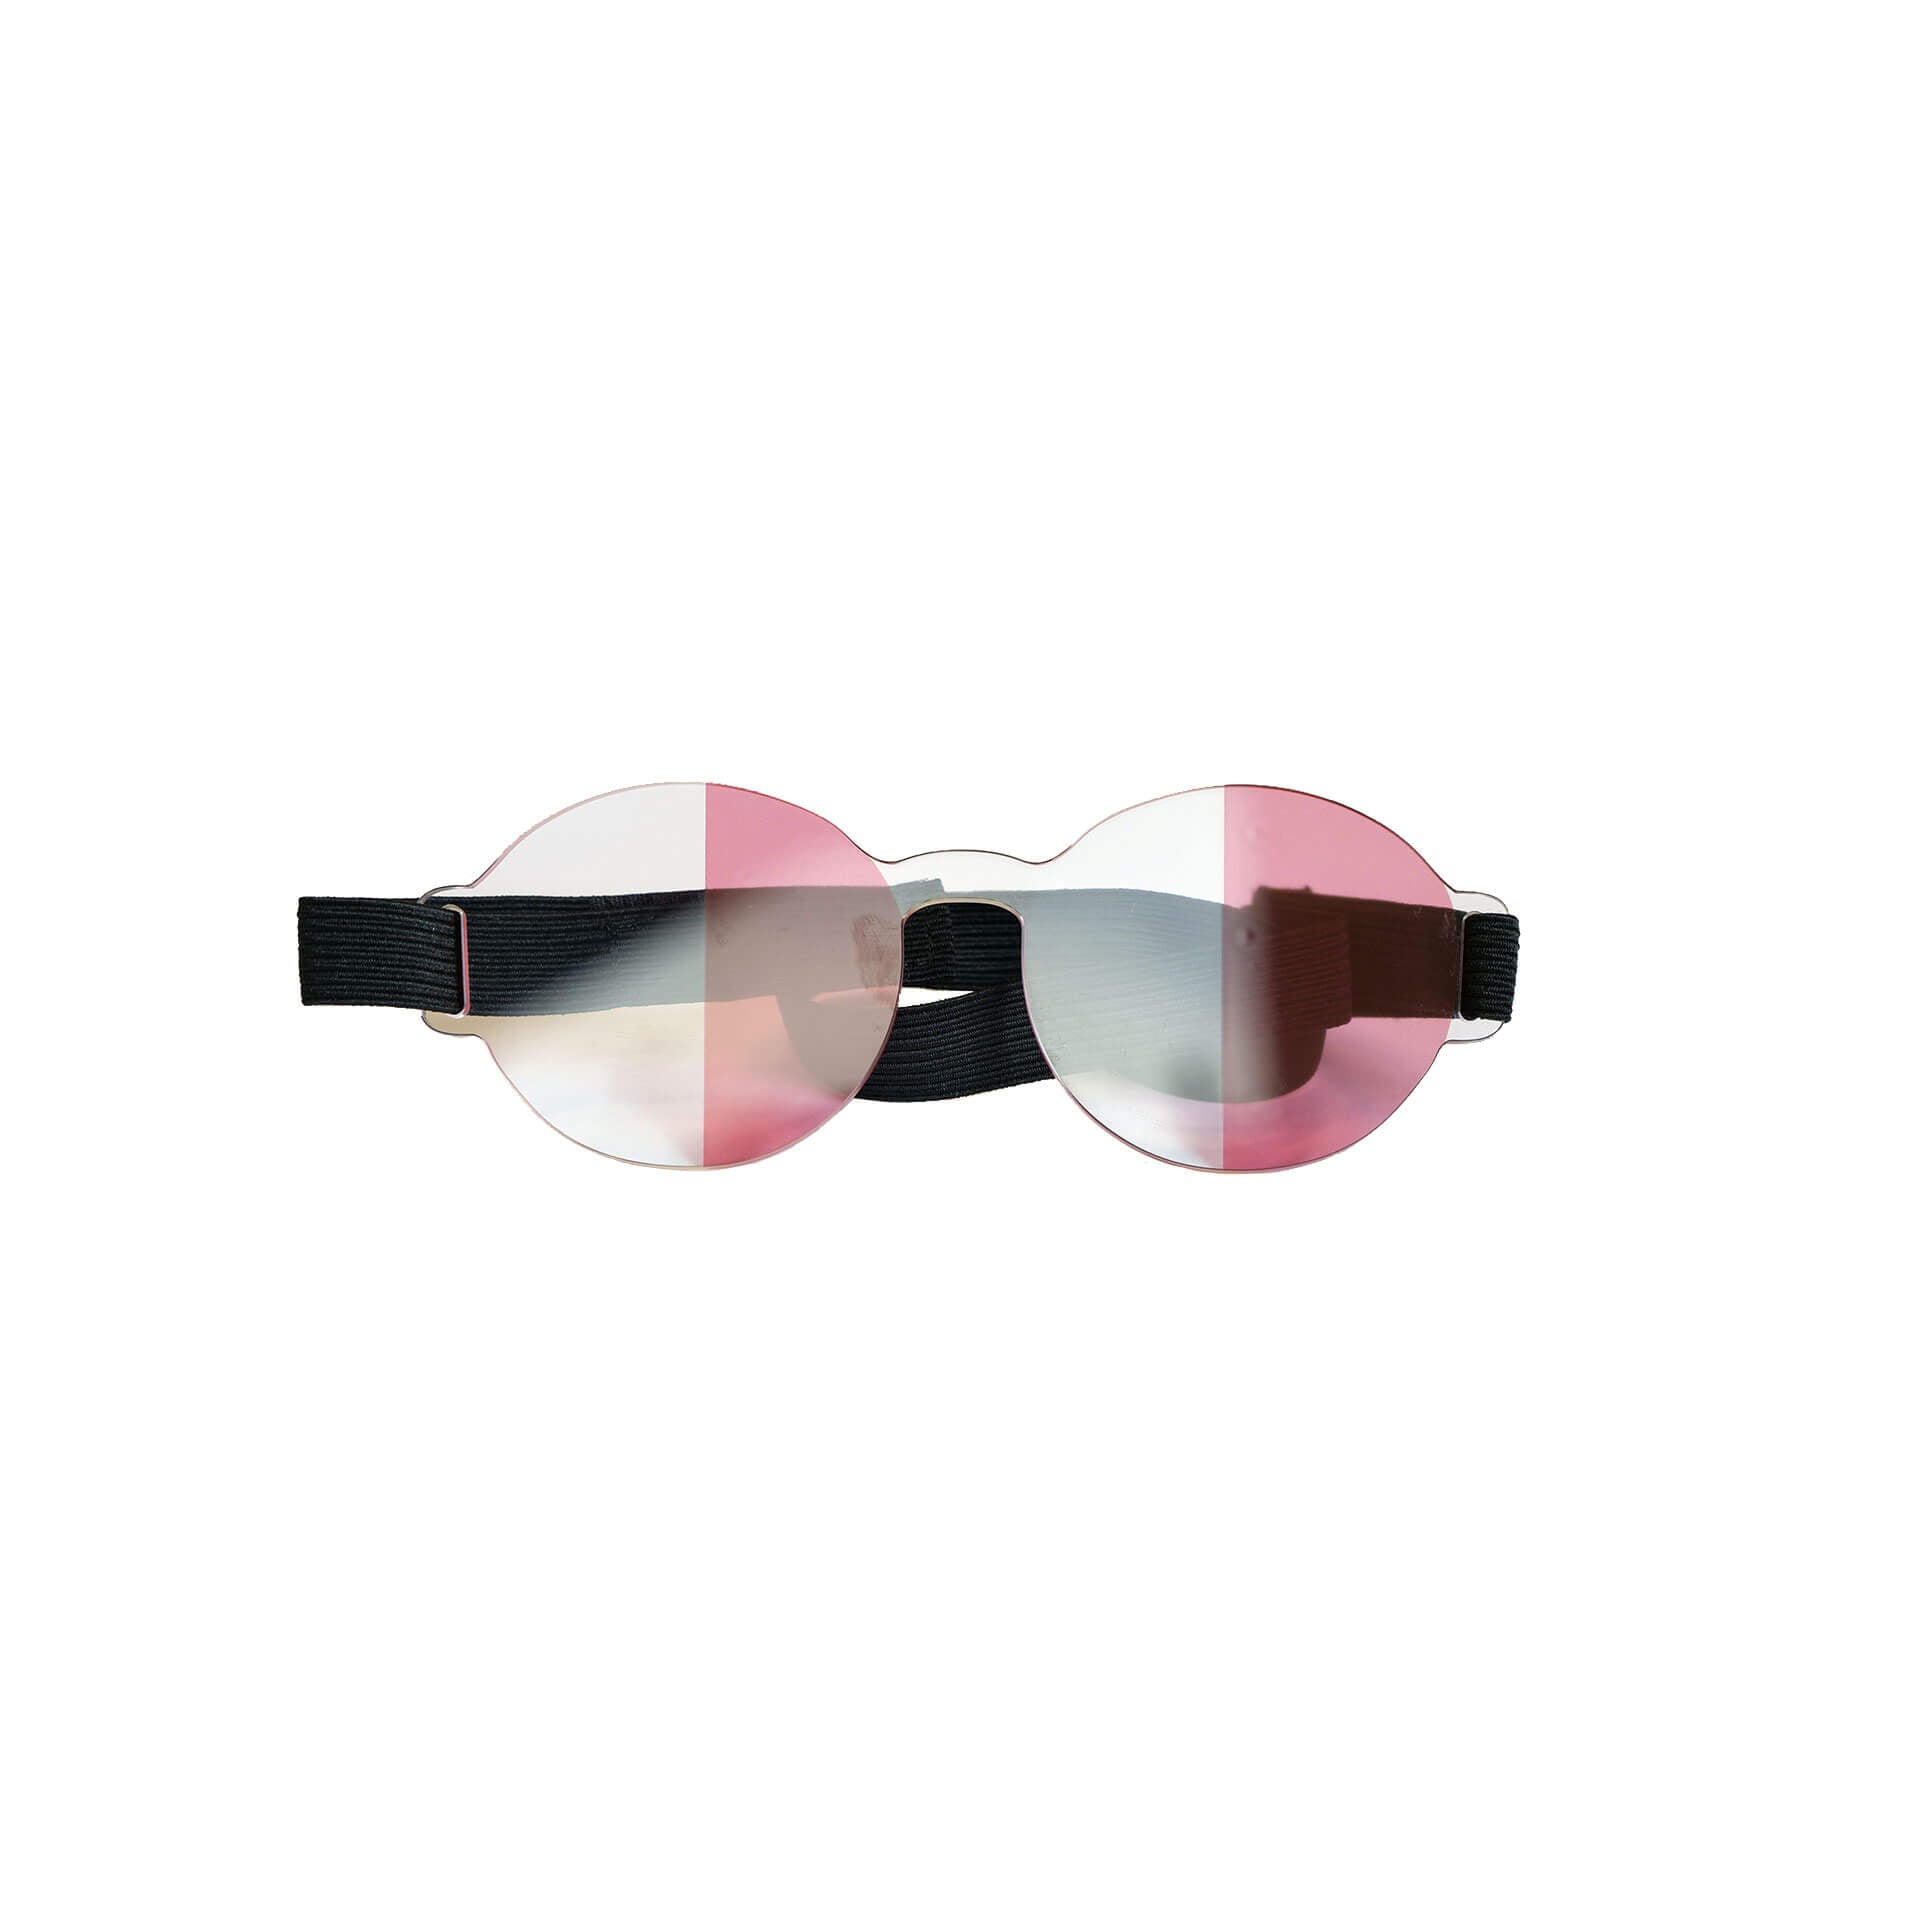 Halbfeld Brille Brille ARTZT neuro Rot-Transparent  